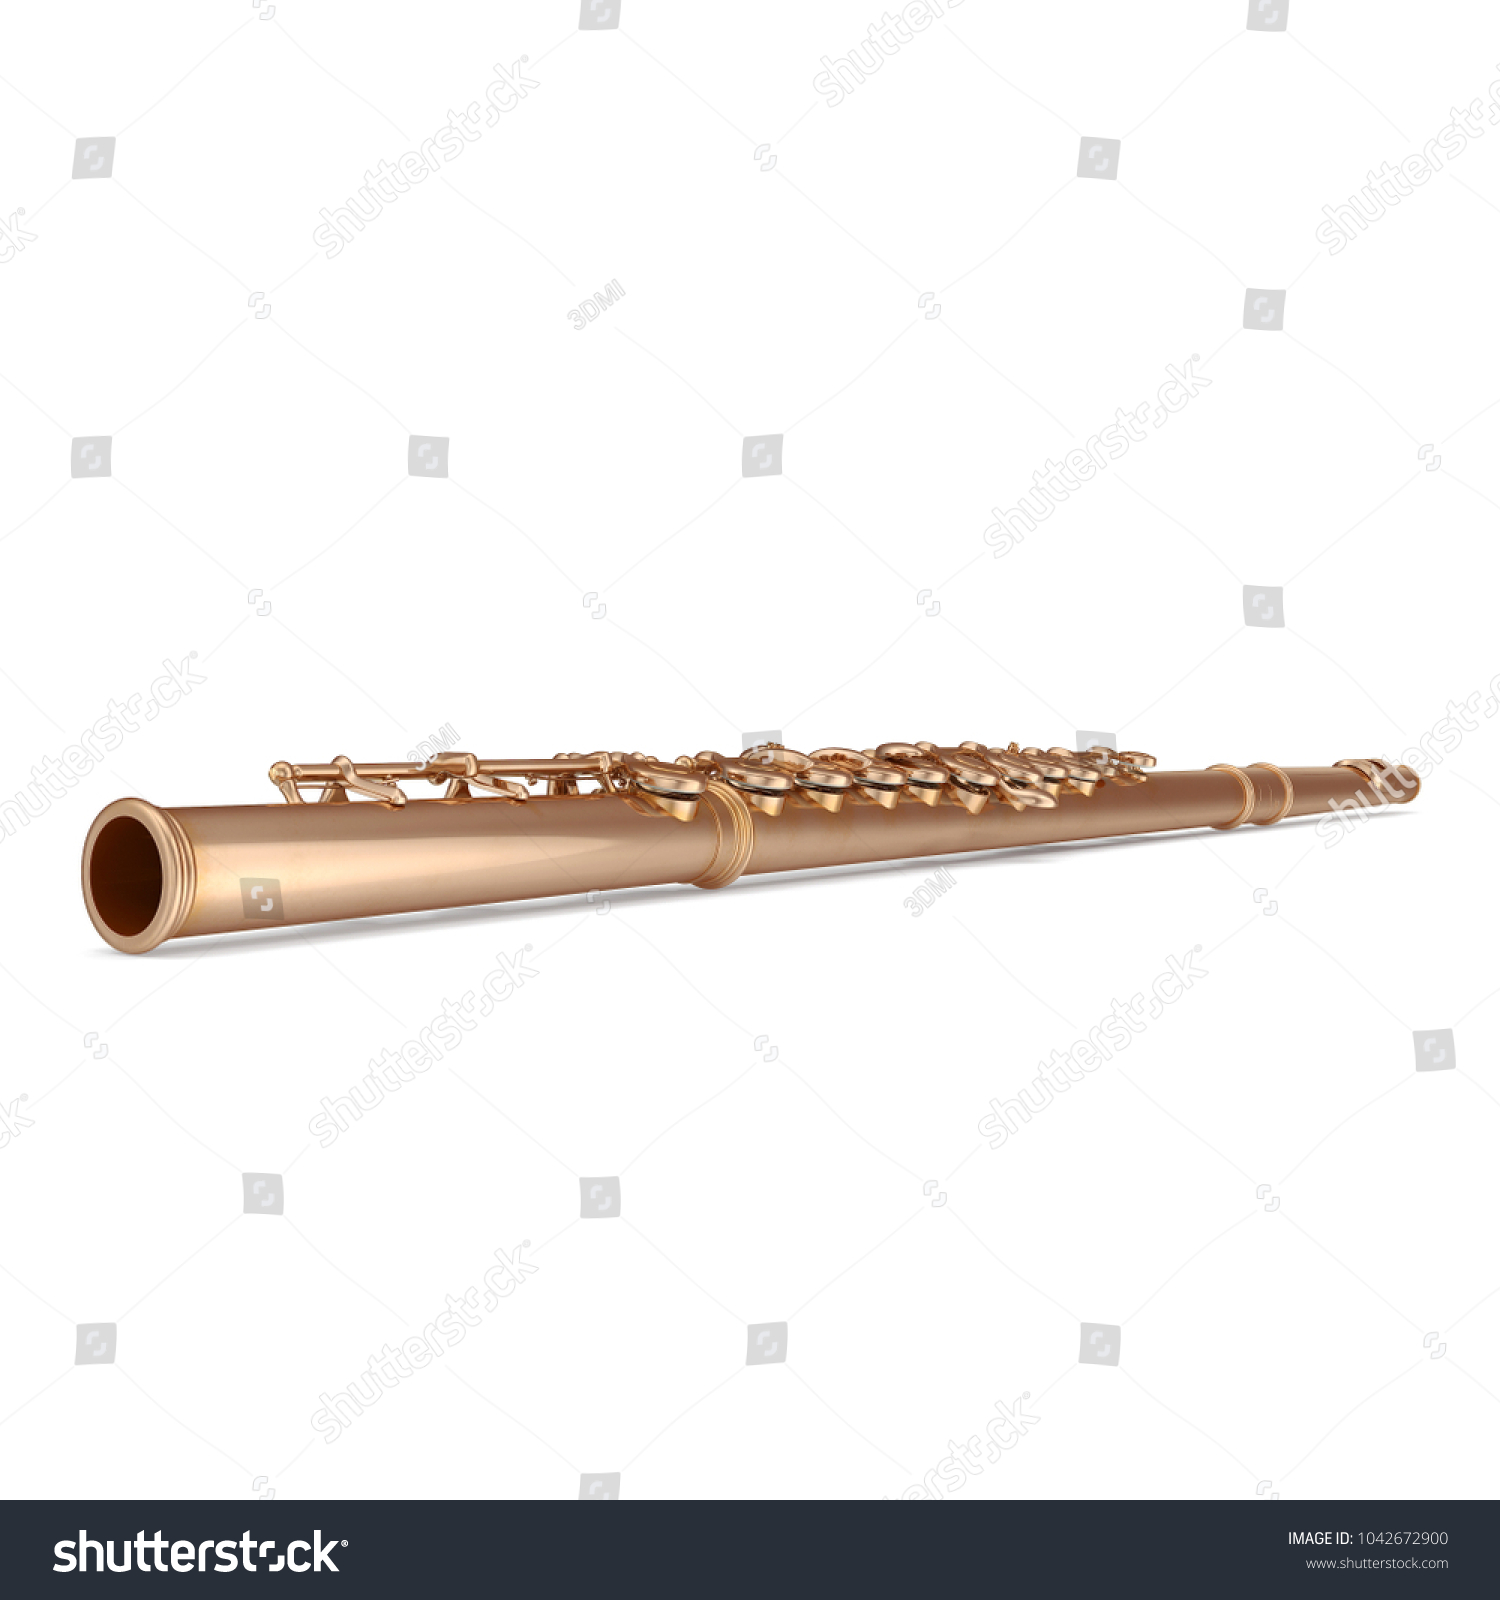 Classical Golden Flute On White 3d Stock Illustration 1042672900 ...